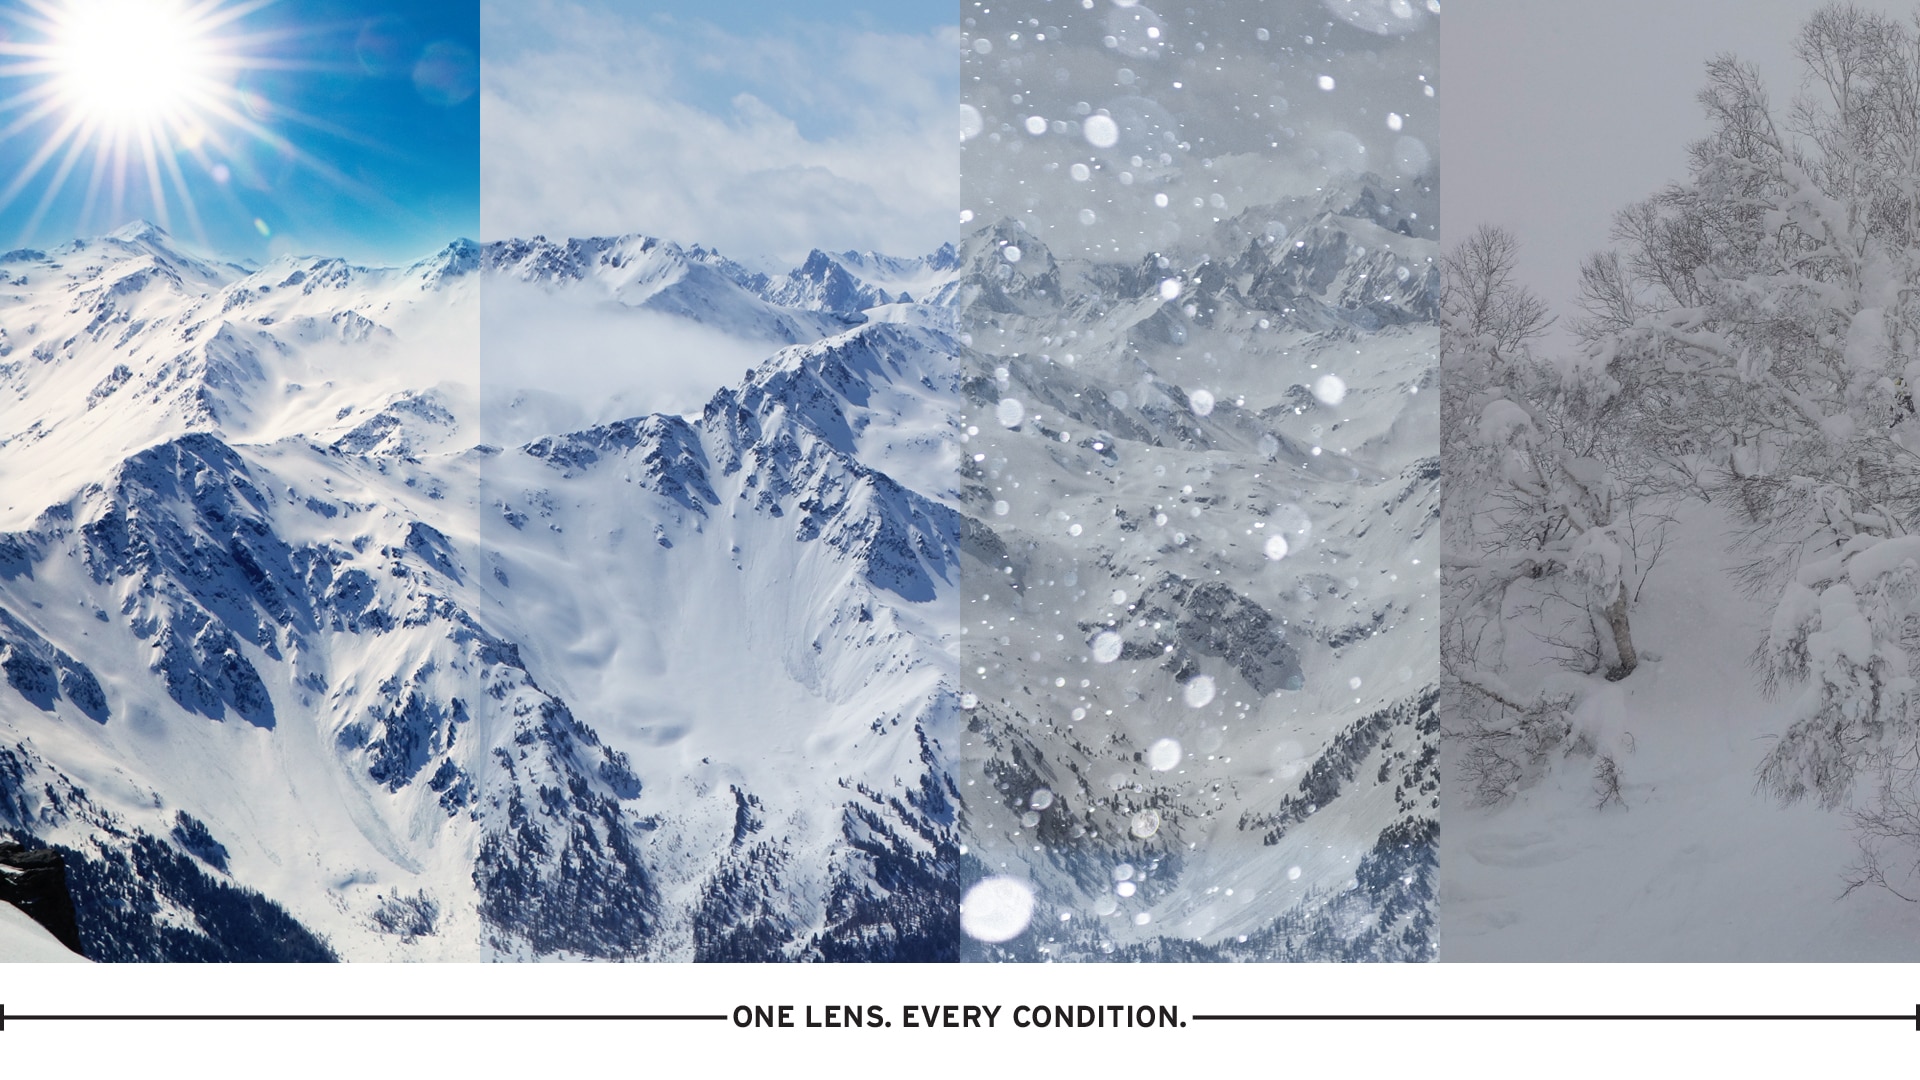 Snowy Mountain View Through Polarized Automatic Lens